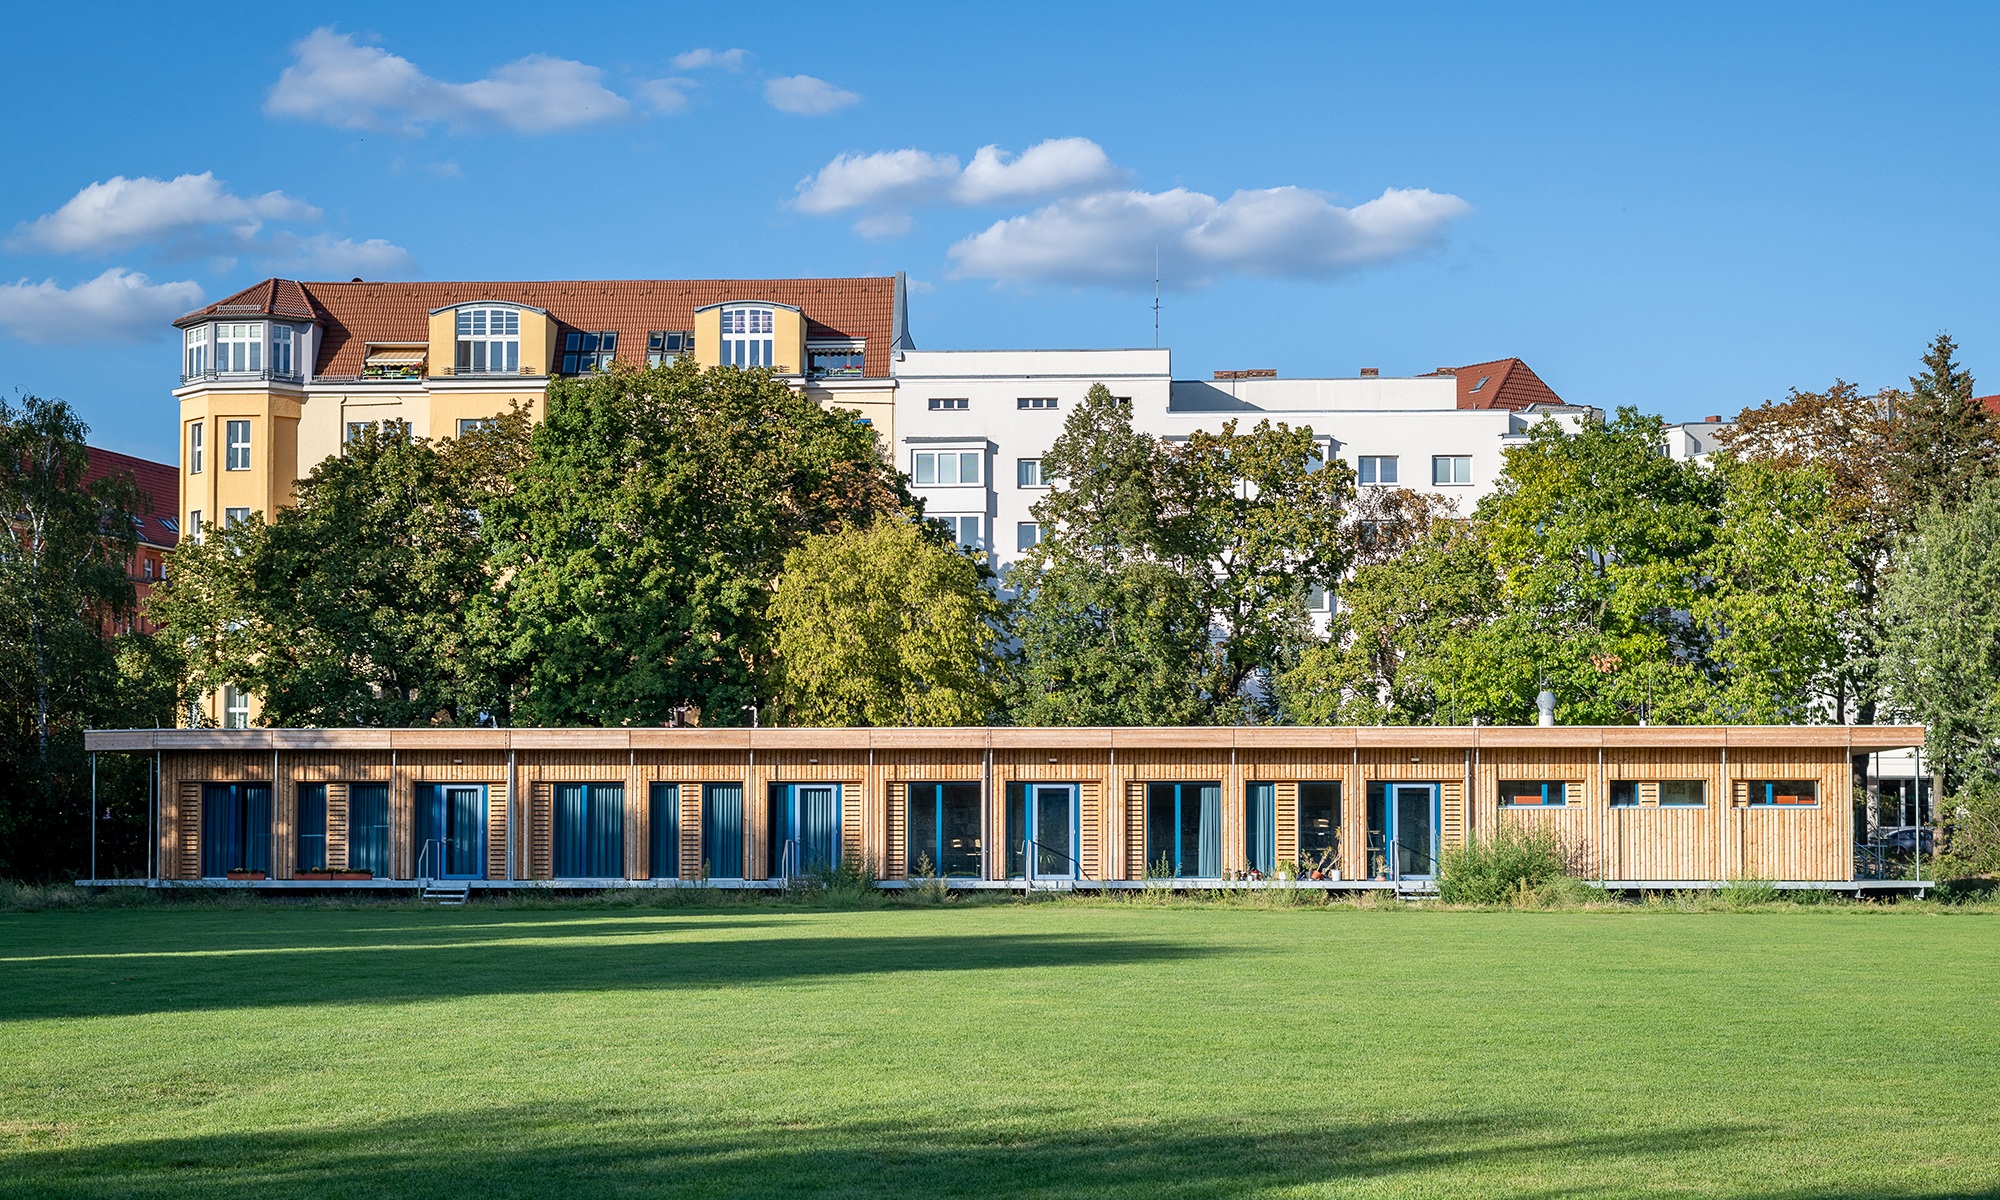 Visualisierung eines eingeschossiges temporären Schulhauses in Berlin Schönefeld. Die Holzfassade hebt sich von der grünen Wiese und vom blauen Himmel ab.